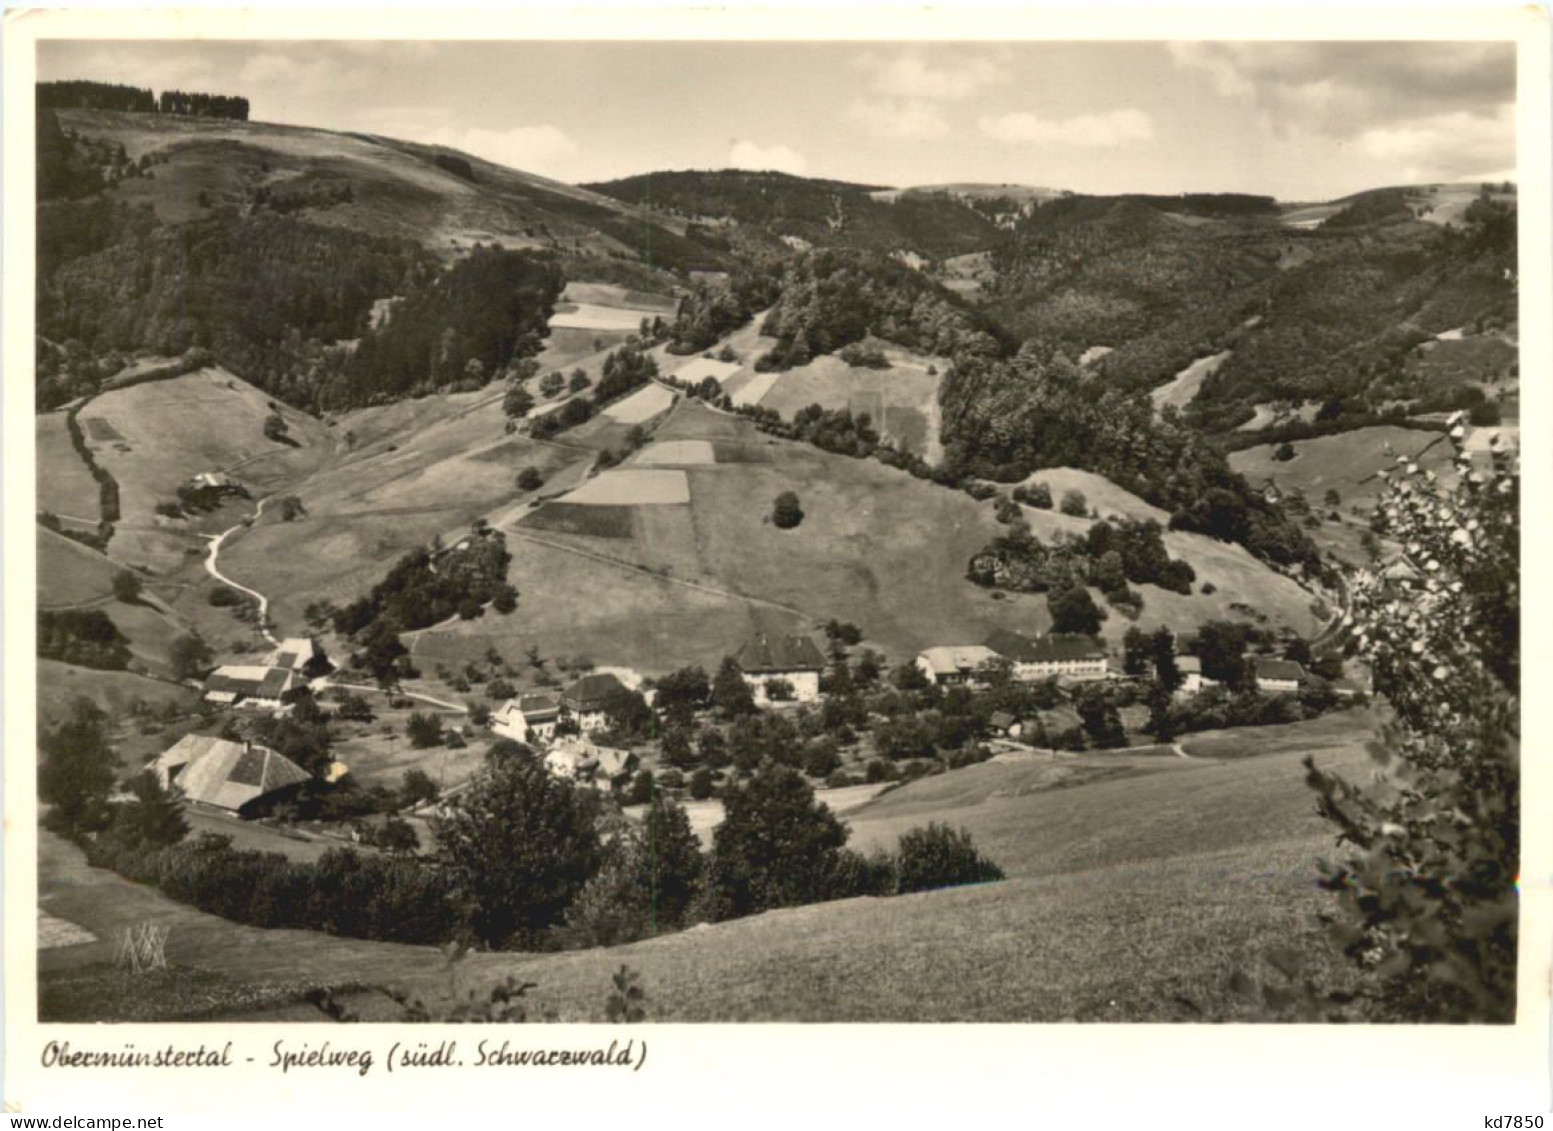 Spielweg Südl. Schwarzwald, Obermünstertal - Muenstertal